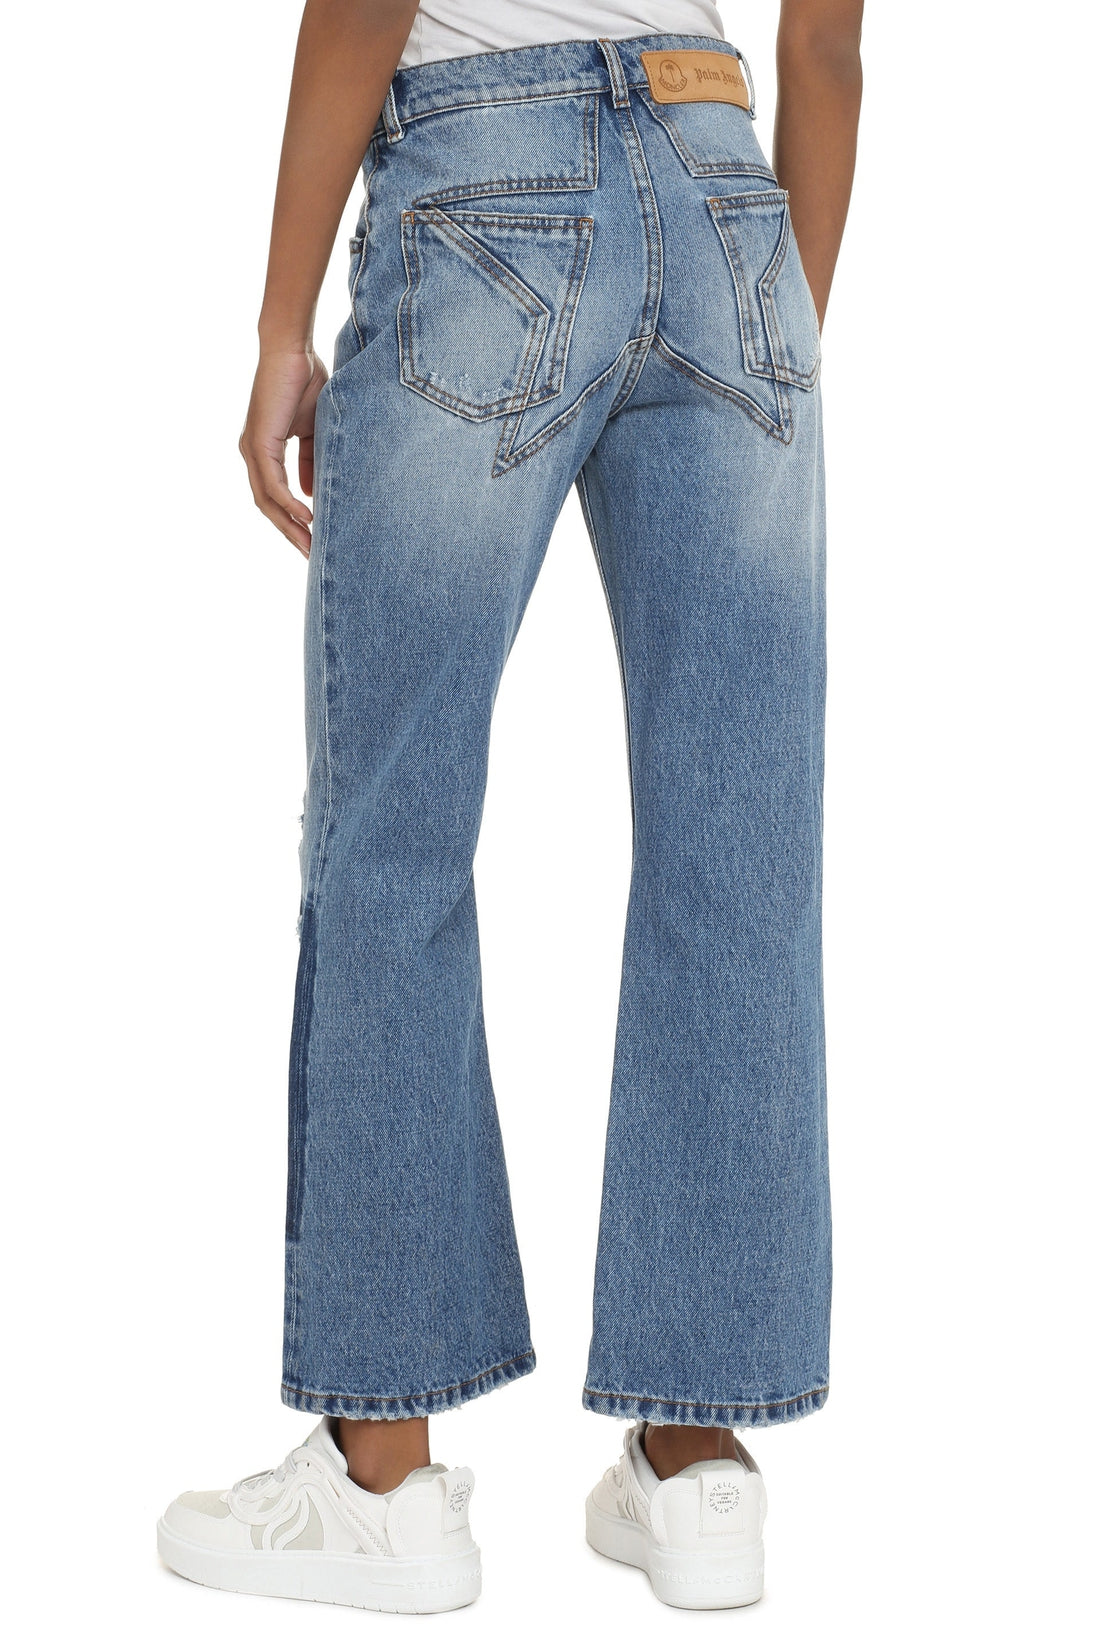 Moncler Genius-OUTLET-SALE-8 Moncler Palm Angels - 5-pocket straight-leg jeans-ARCHIVIST